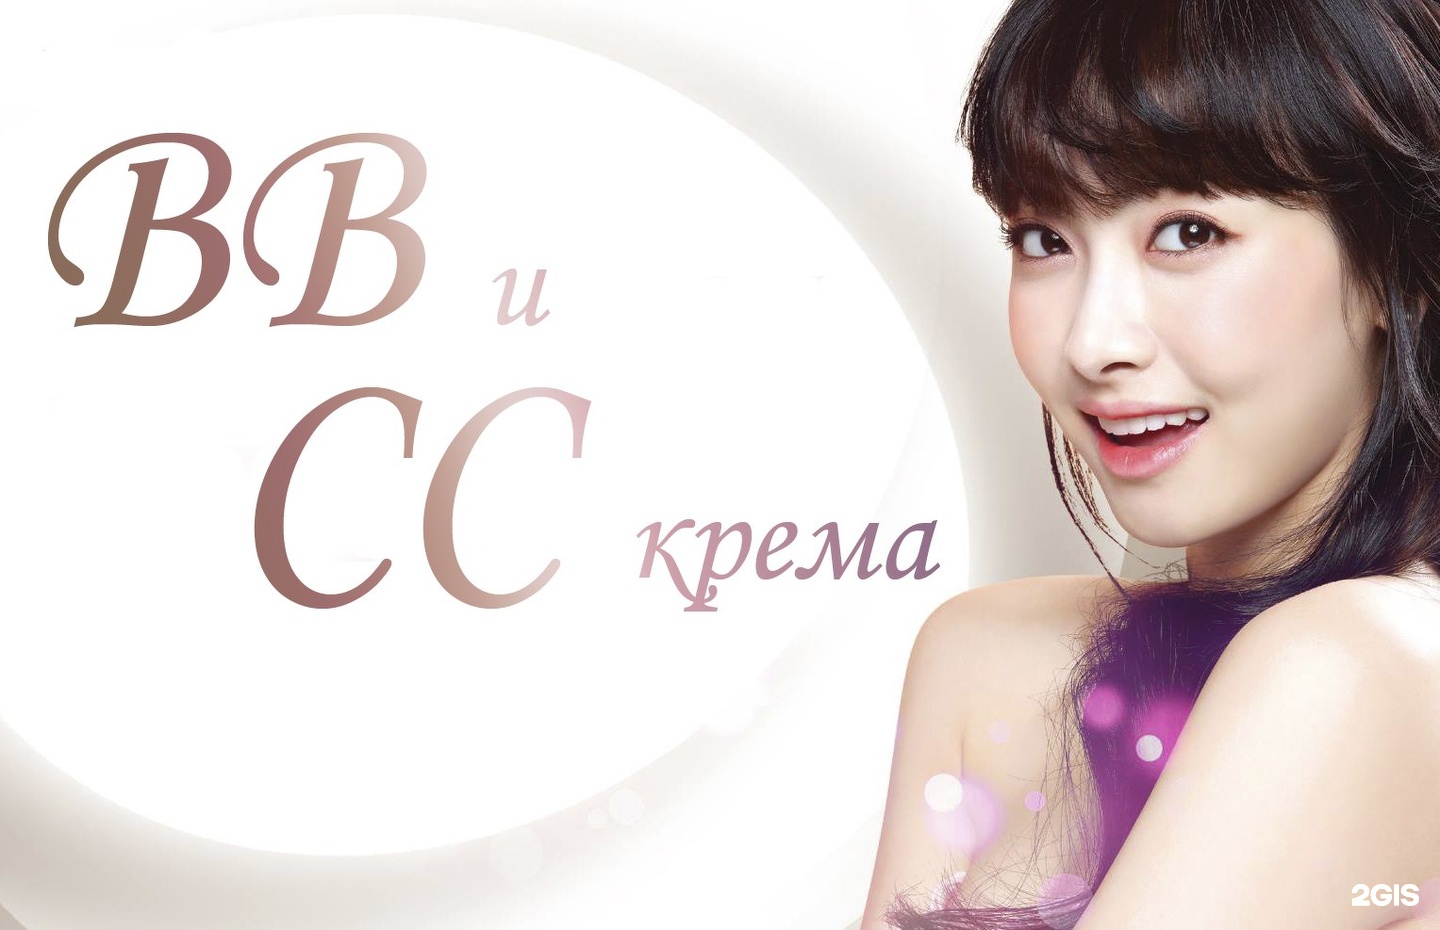 BB корейская косметика.